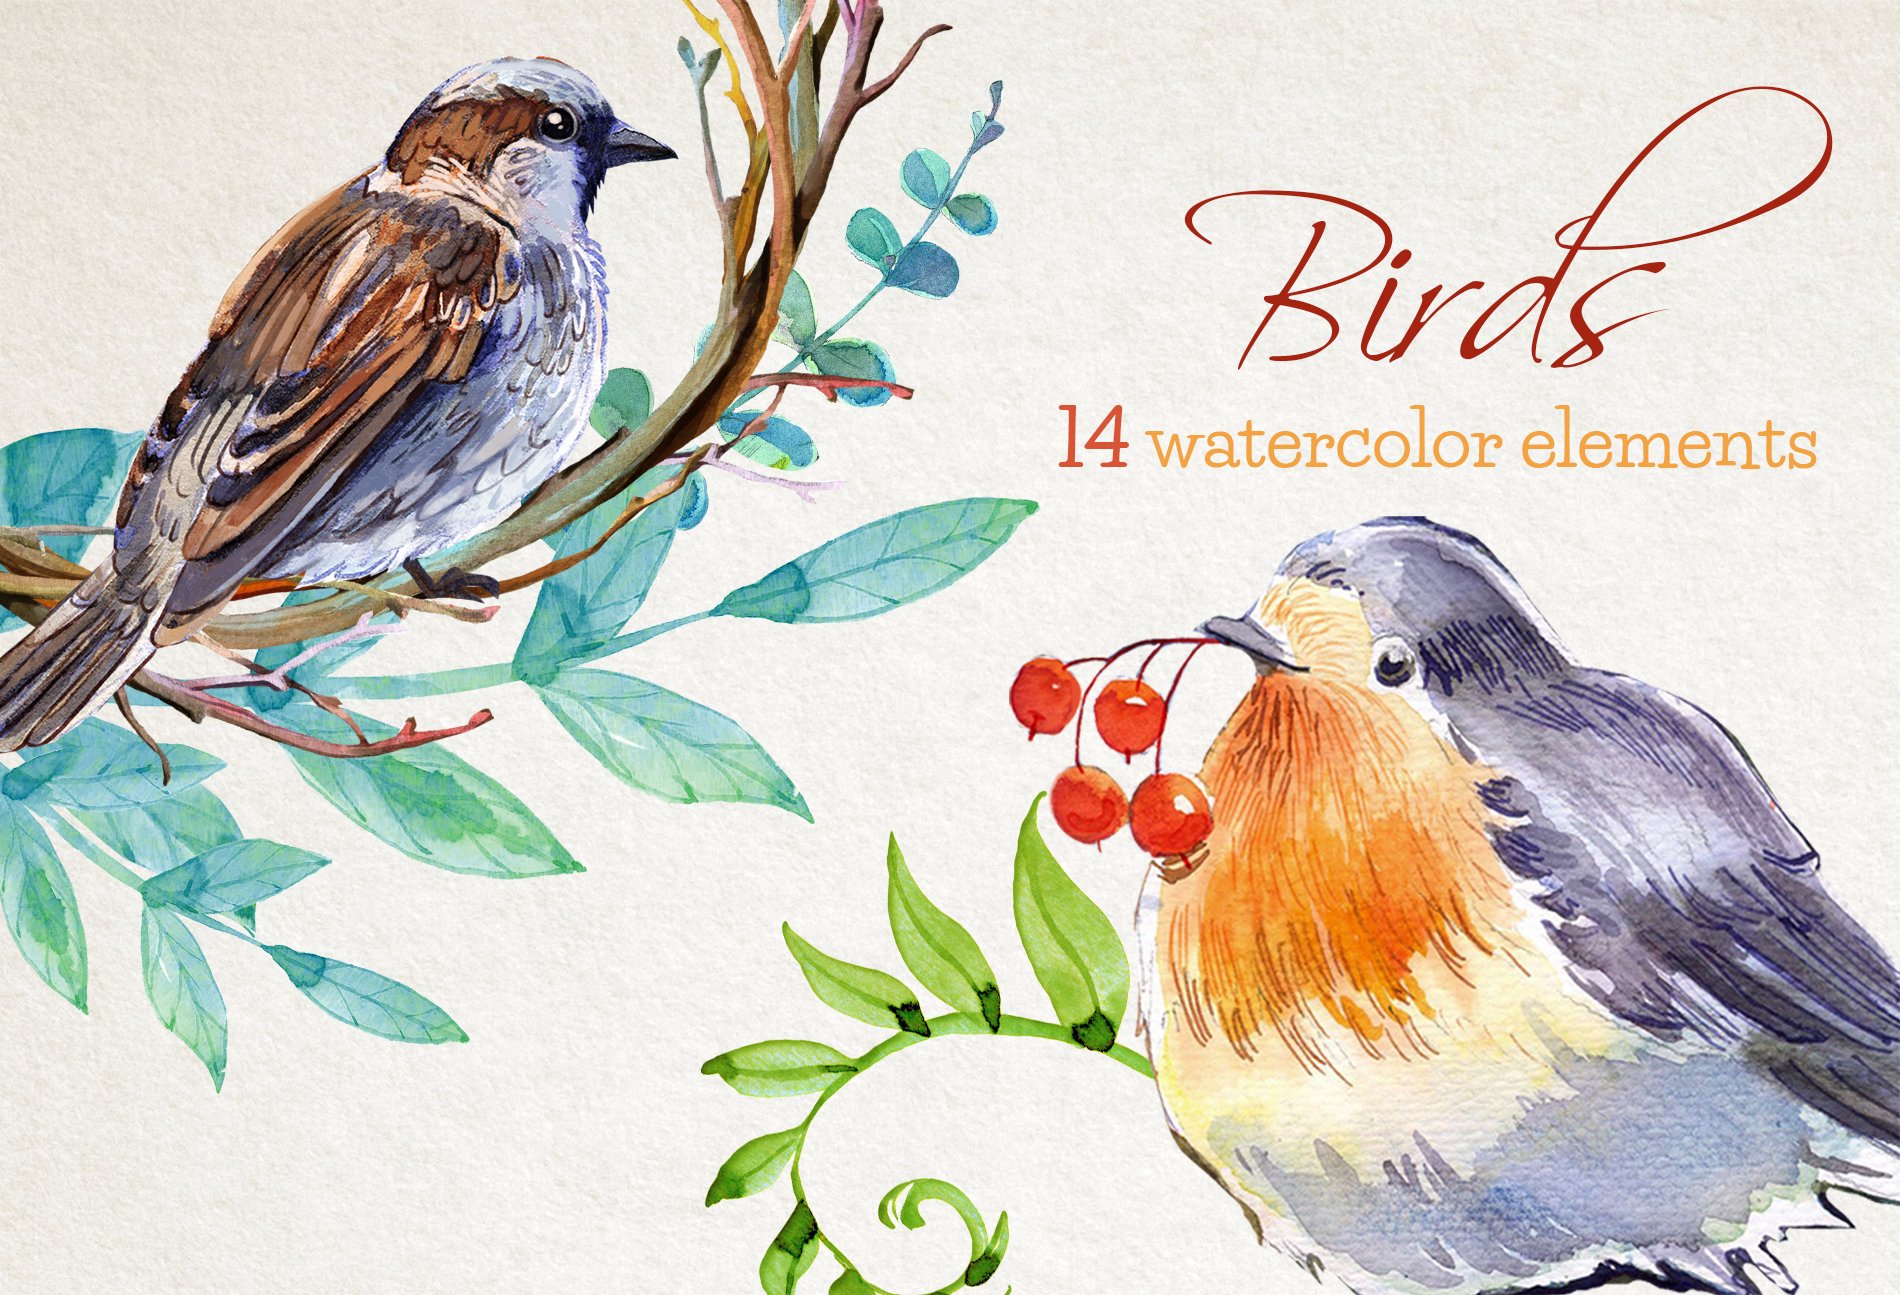 Watercolor birds composition.